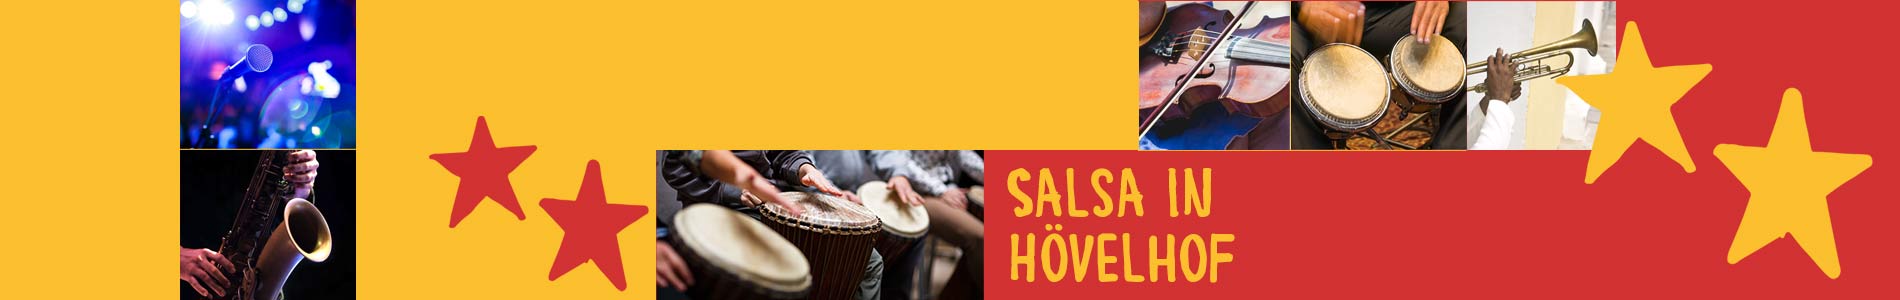 Salsa in Hövelhof – Salsa lernen und tanzen, Tanzkurse, Partys, Veranstaltungen